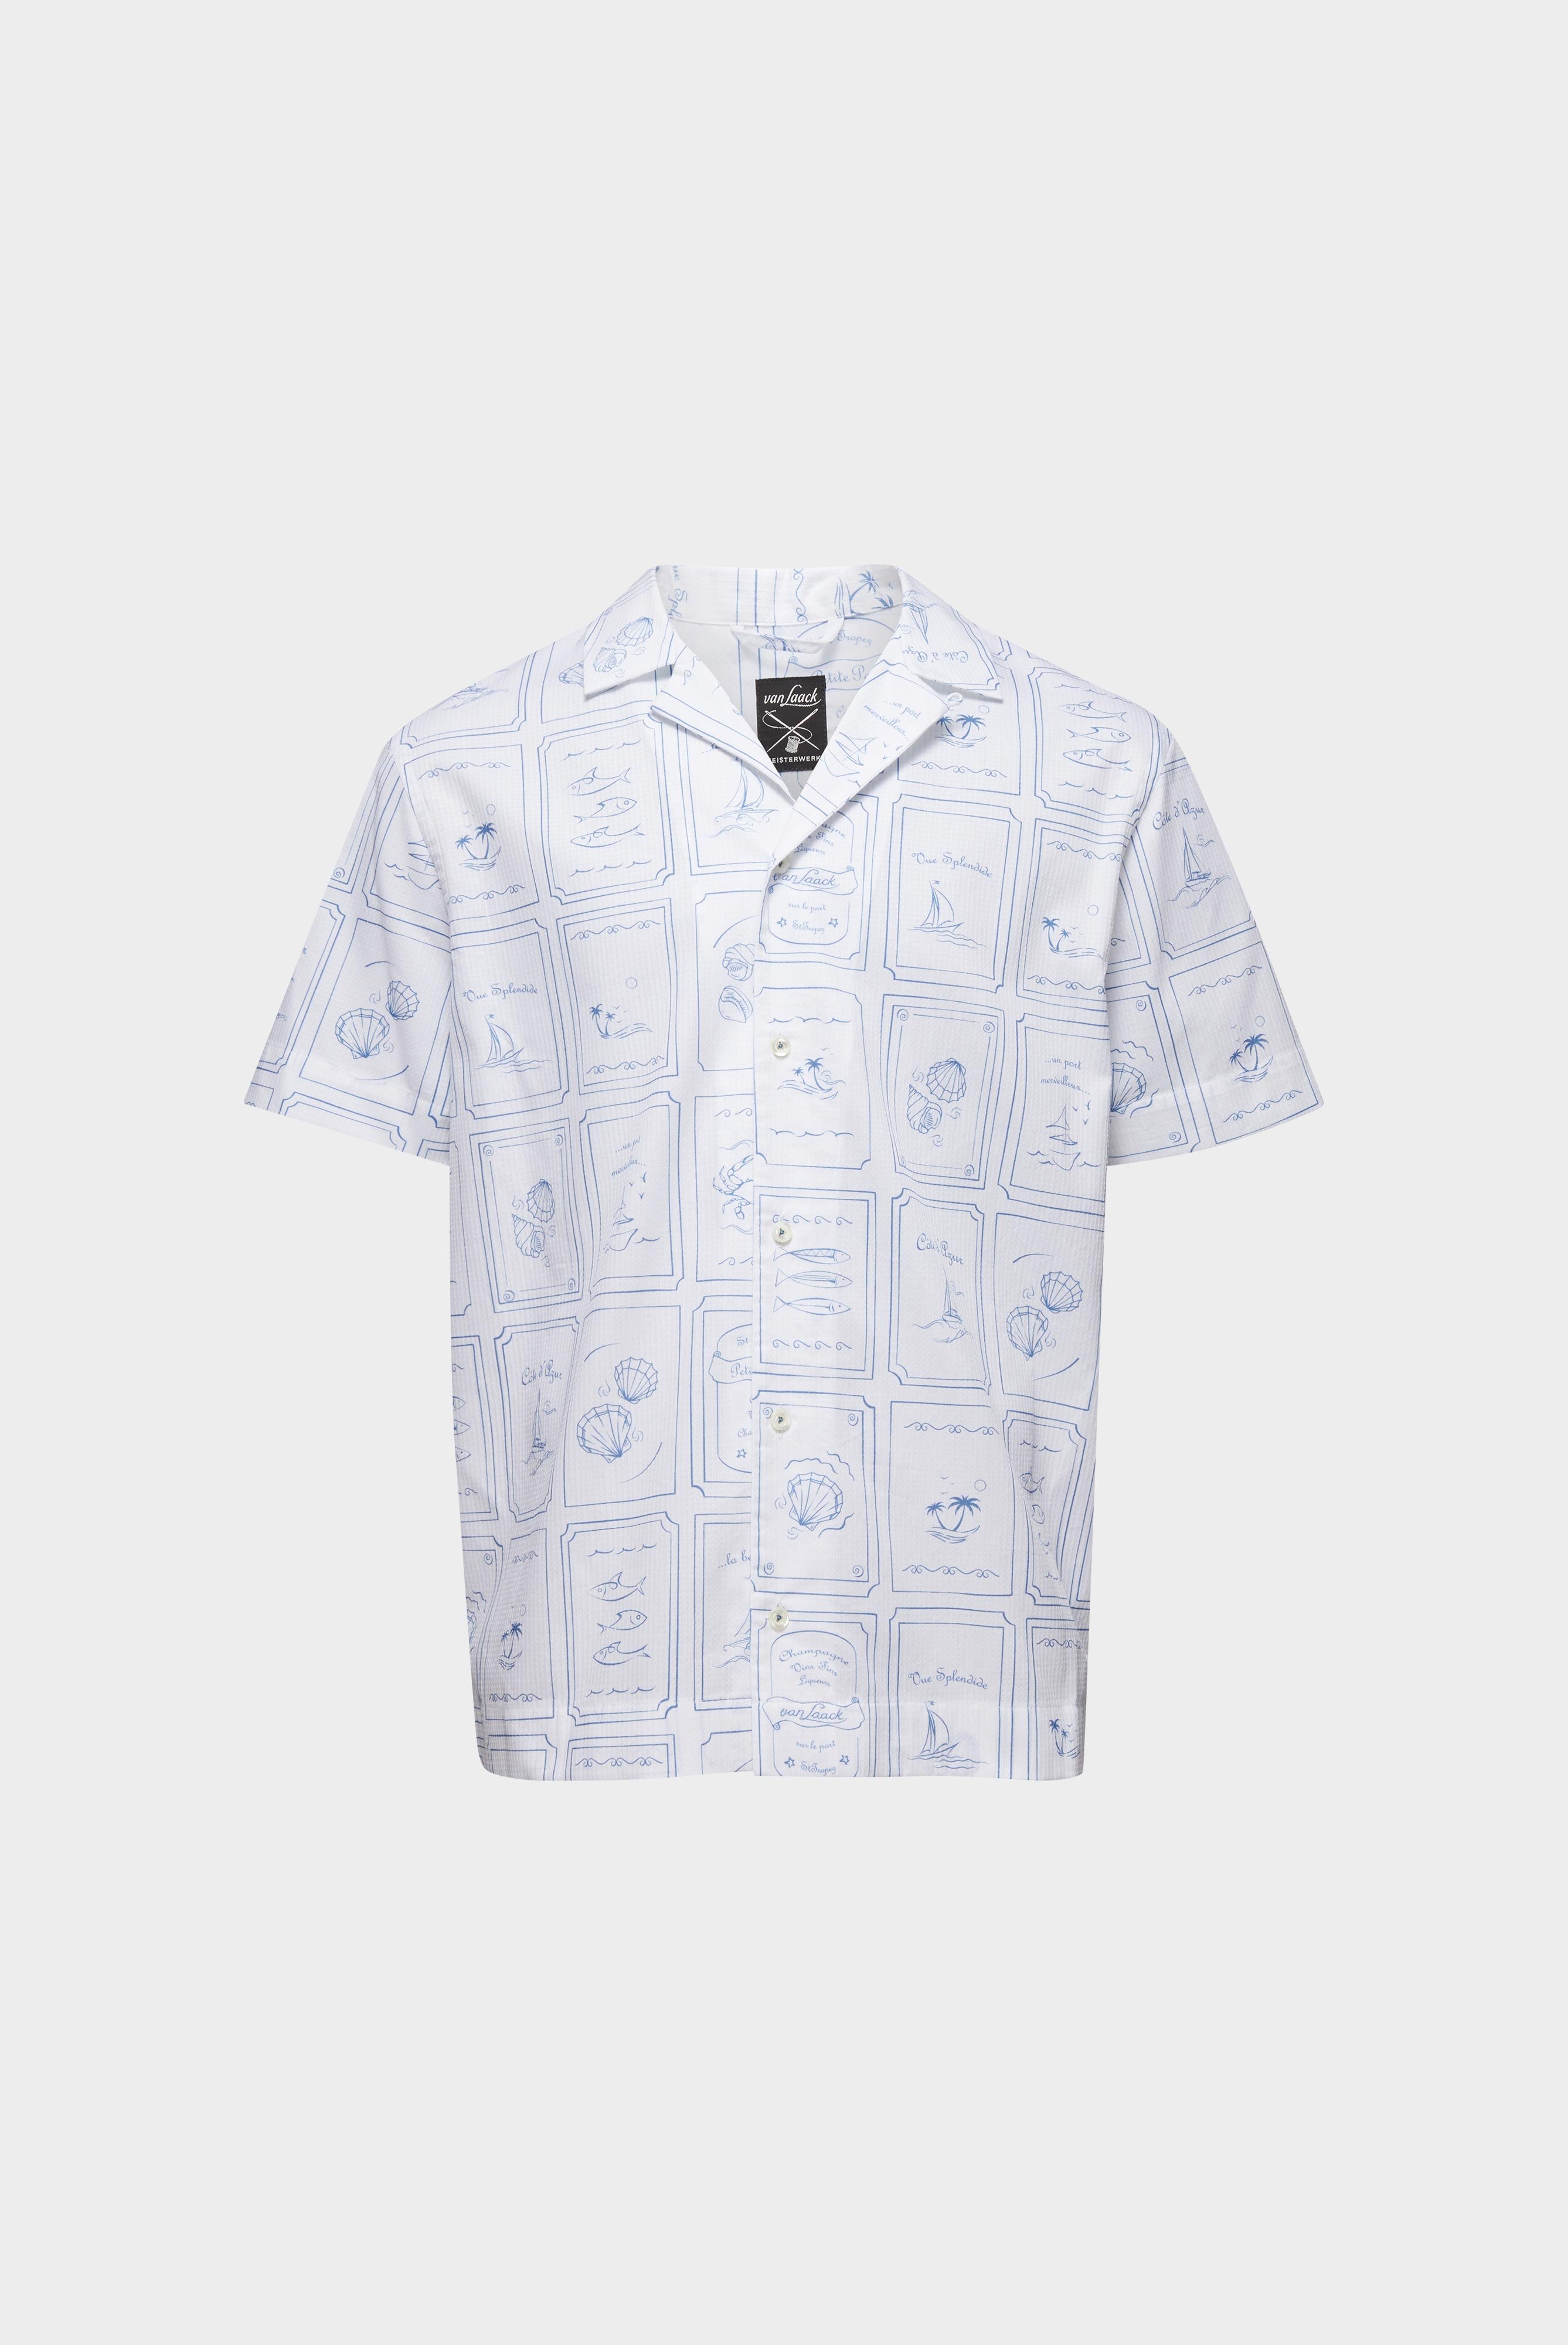 Casual Hemden+Kurzarm Hemd mit Reverskragen und Druck+20.2075.RD.172041.007.S